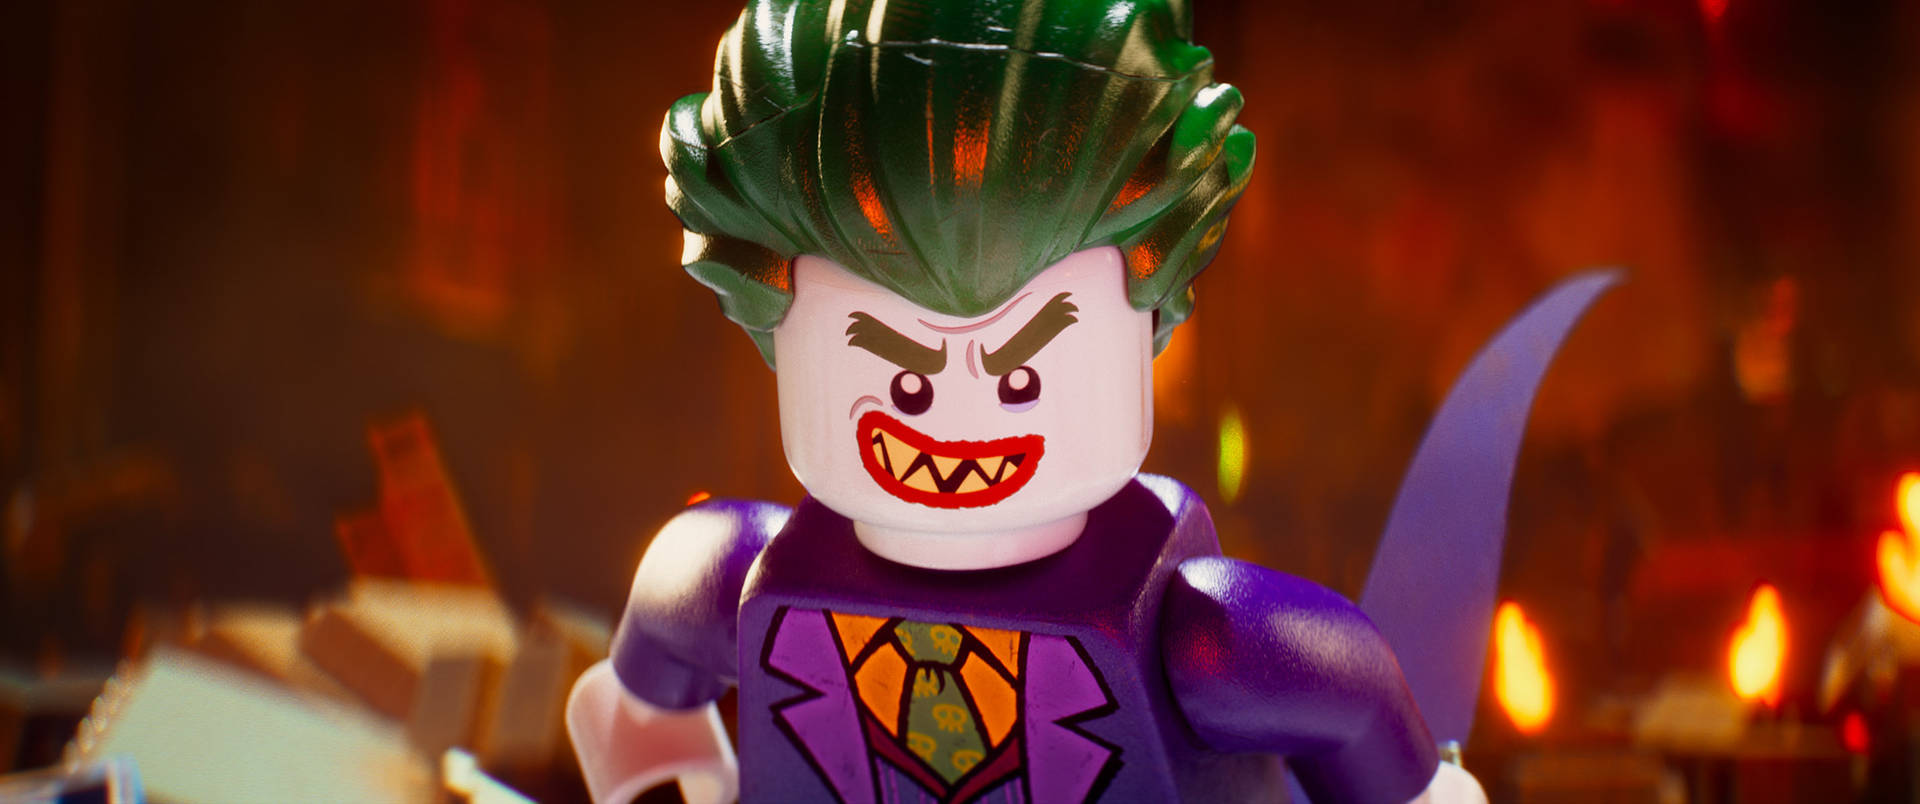 Joker's Portrait From The Lego Batman Movie Wallpaper